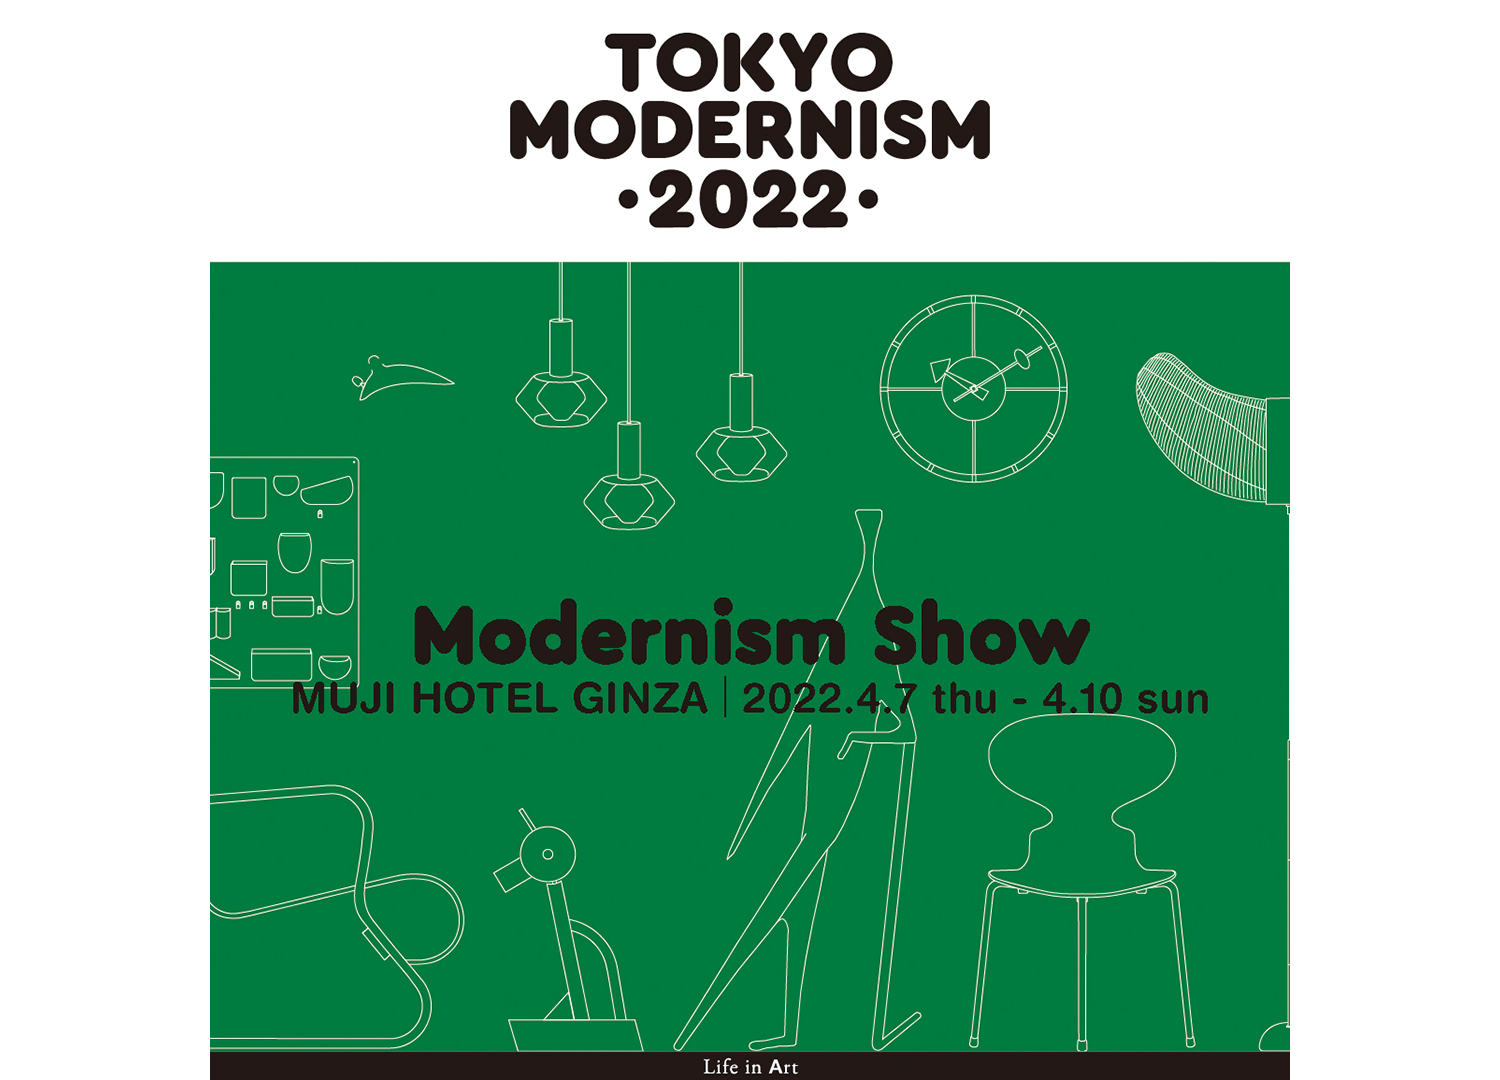 MODERNISM SHOW at MUJI HOTEL GINZA 2022.4.7 thu - 4.10 sun 